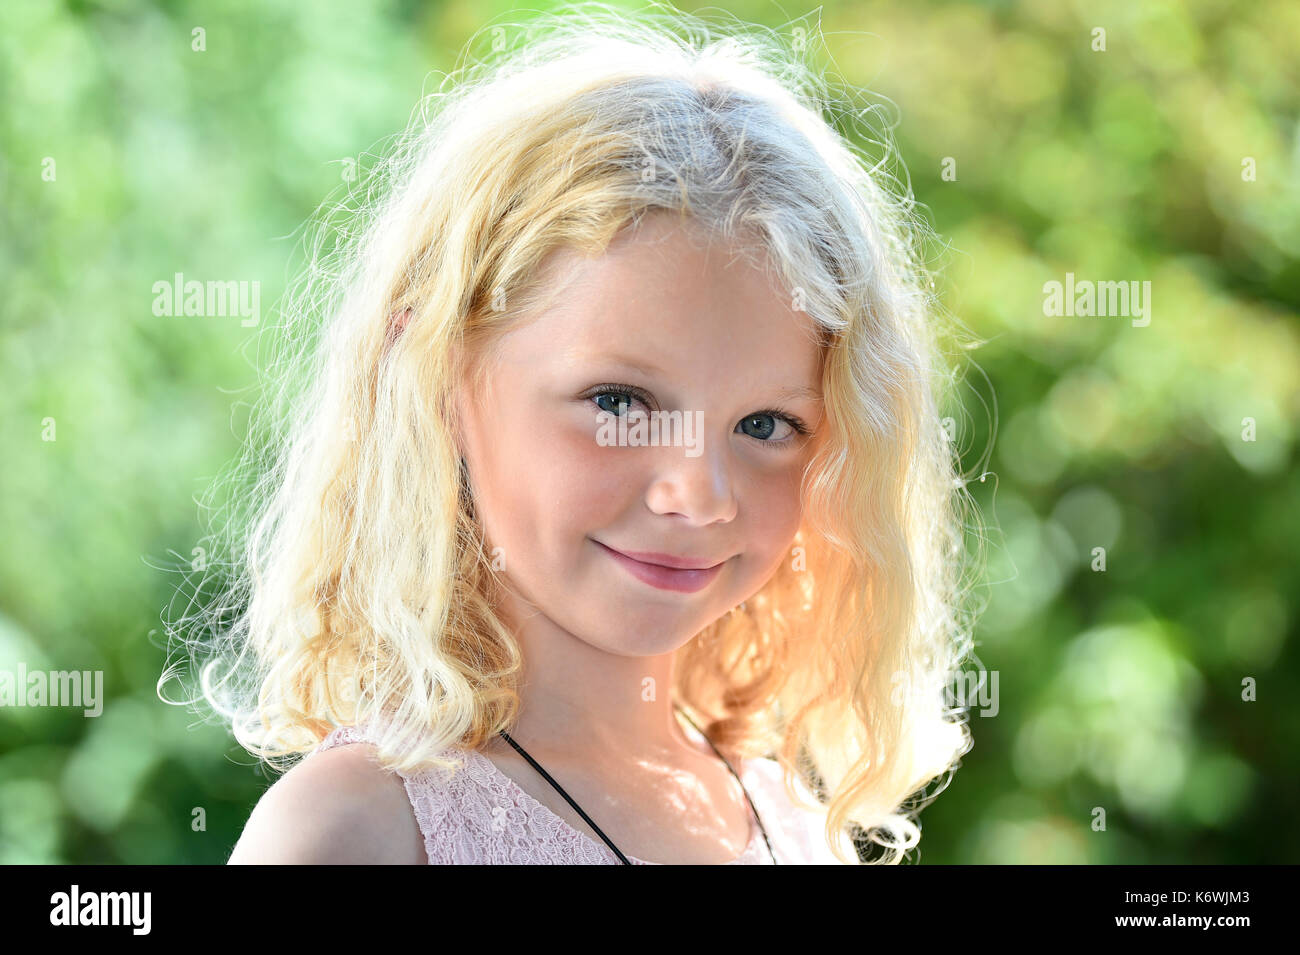 Petite fille aux cheveux blonds, portrait, Suède Banque D'Images